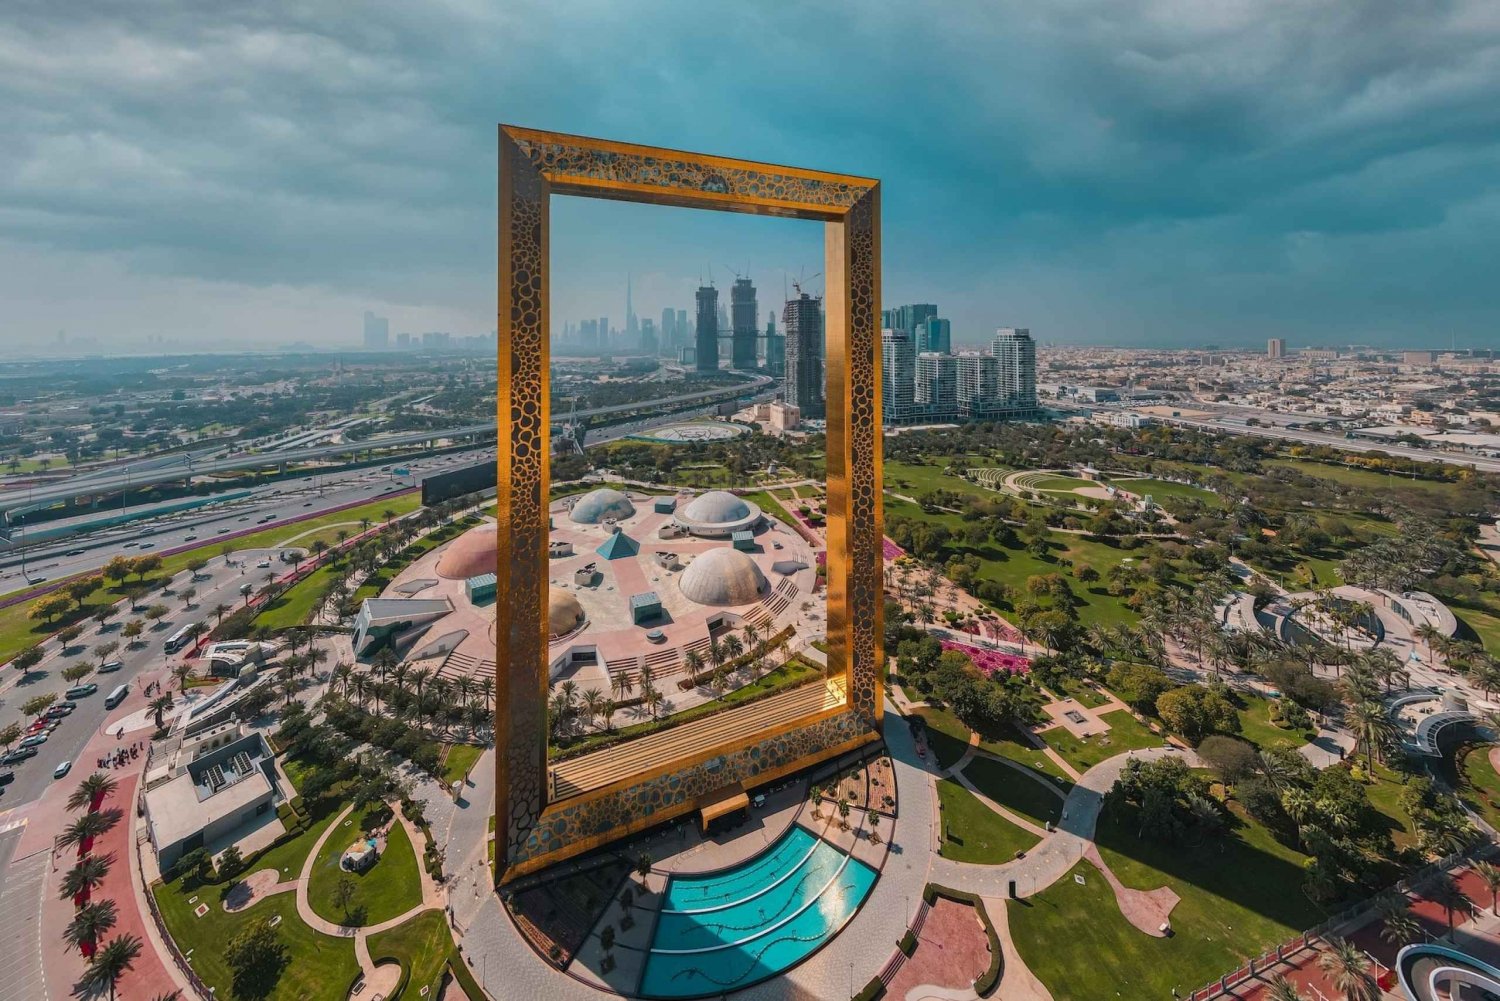 Dubai City Tour: Guided Tour